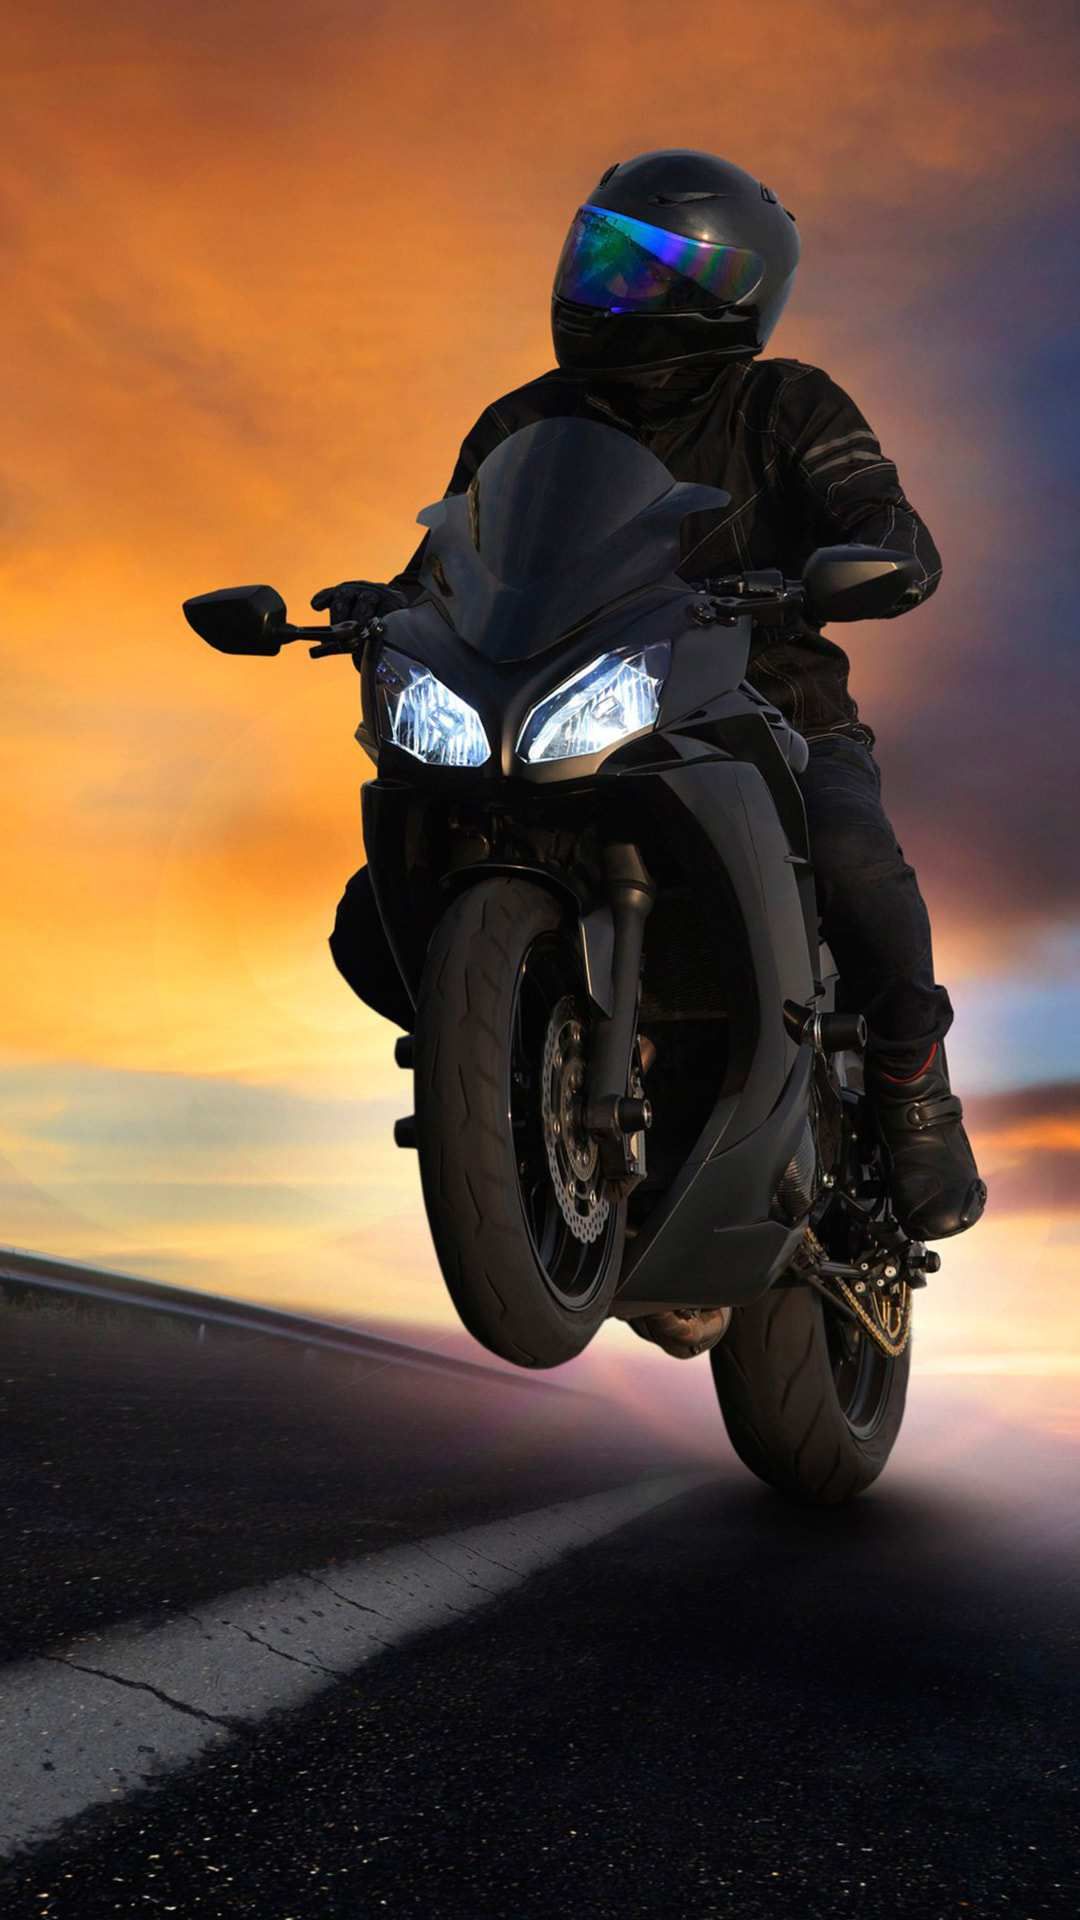 Kawasaki Superbike Black iPhone Wallpaper. Motorcycle